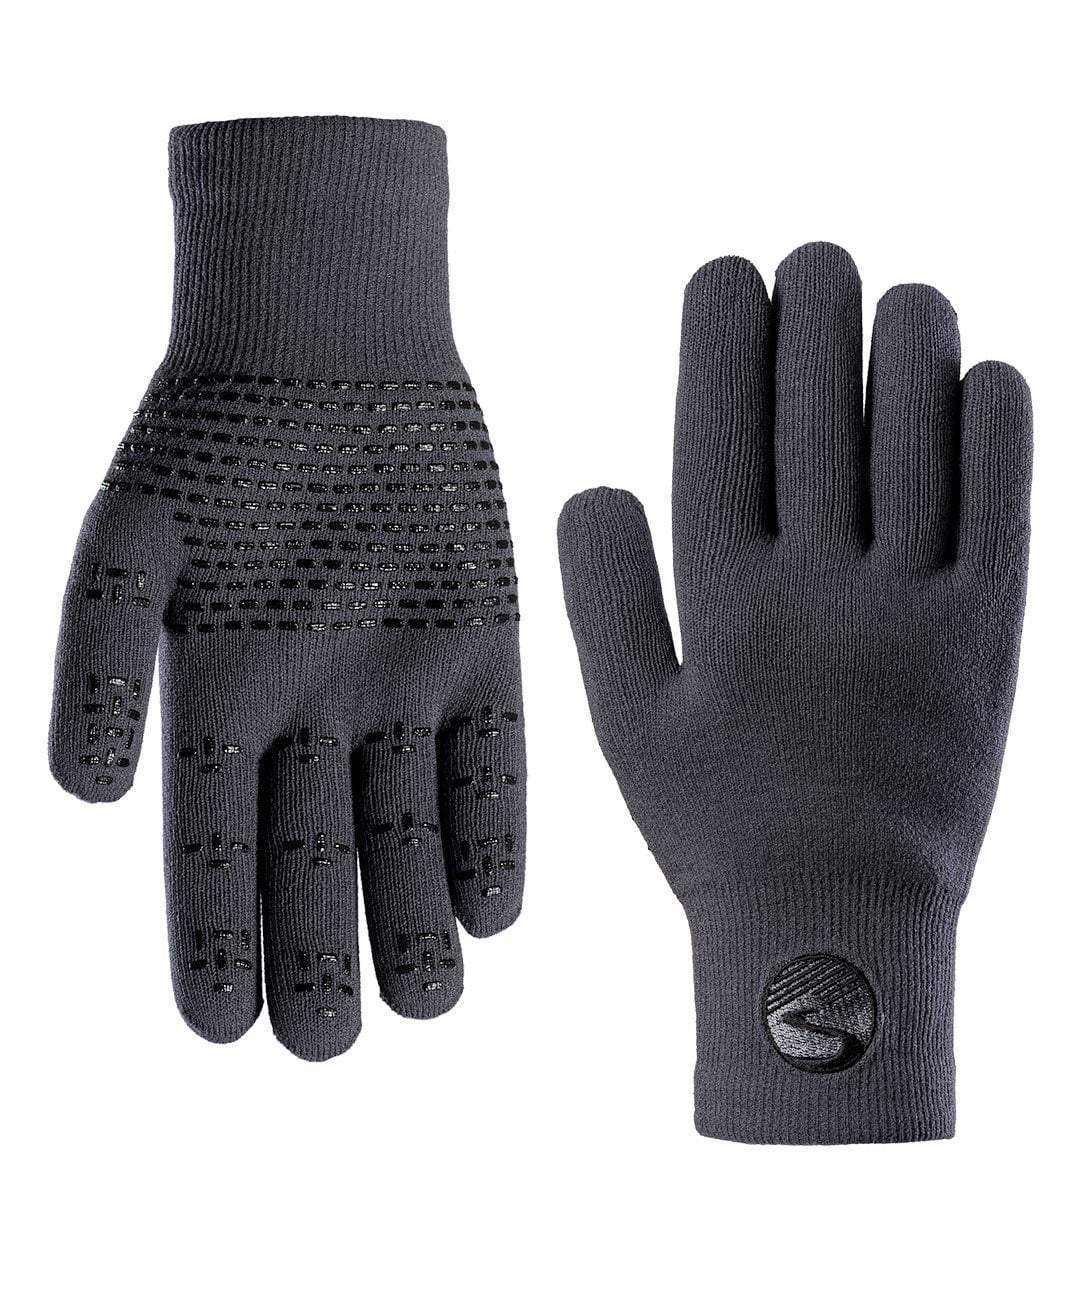 Kids' Lightweight Grippy Gloves II - Black Dark Grey